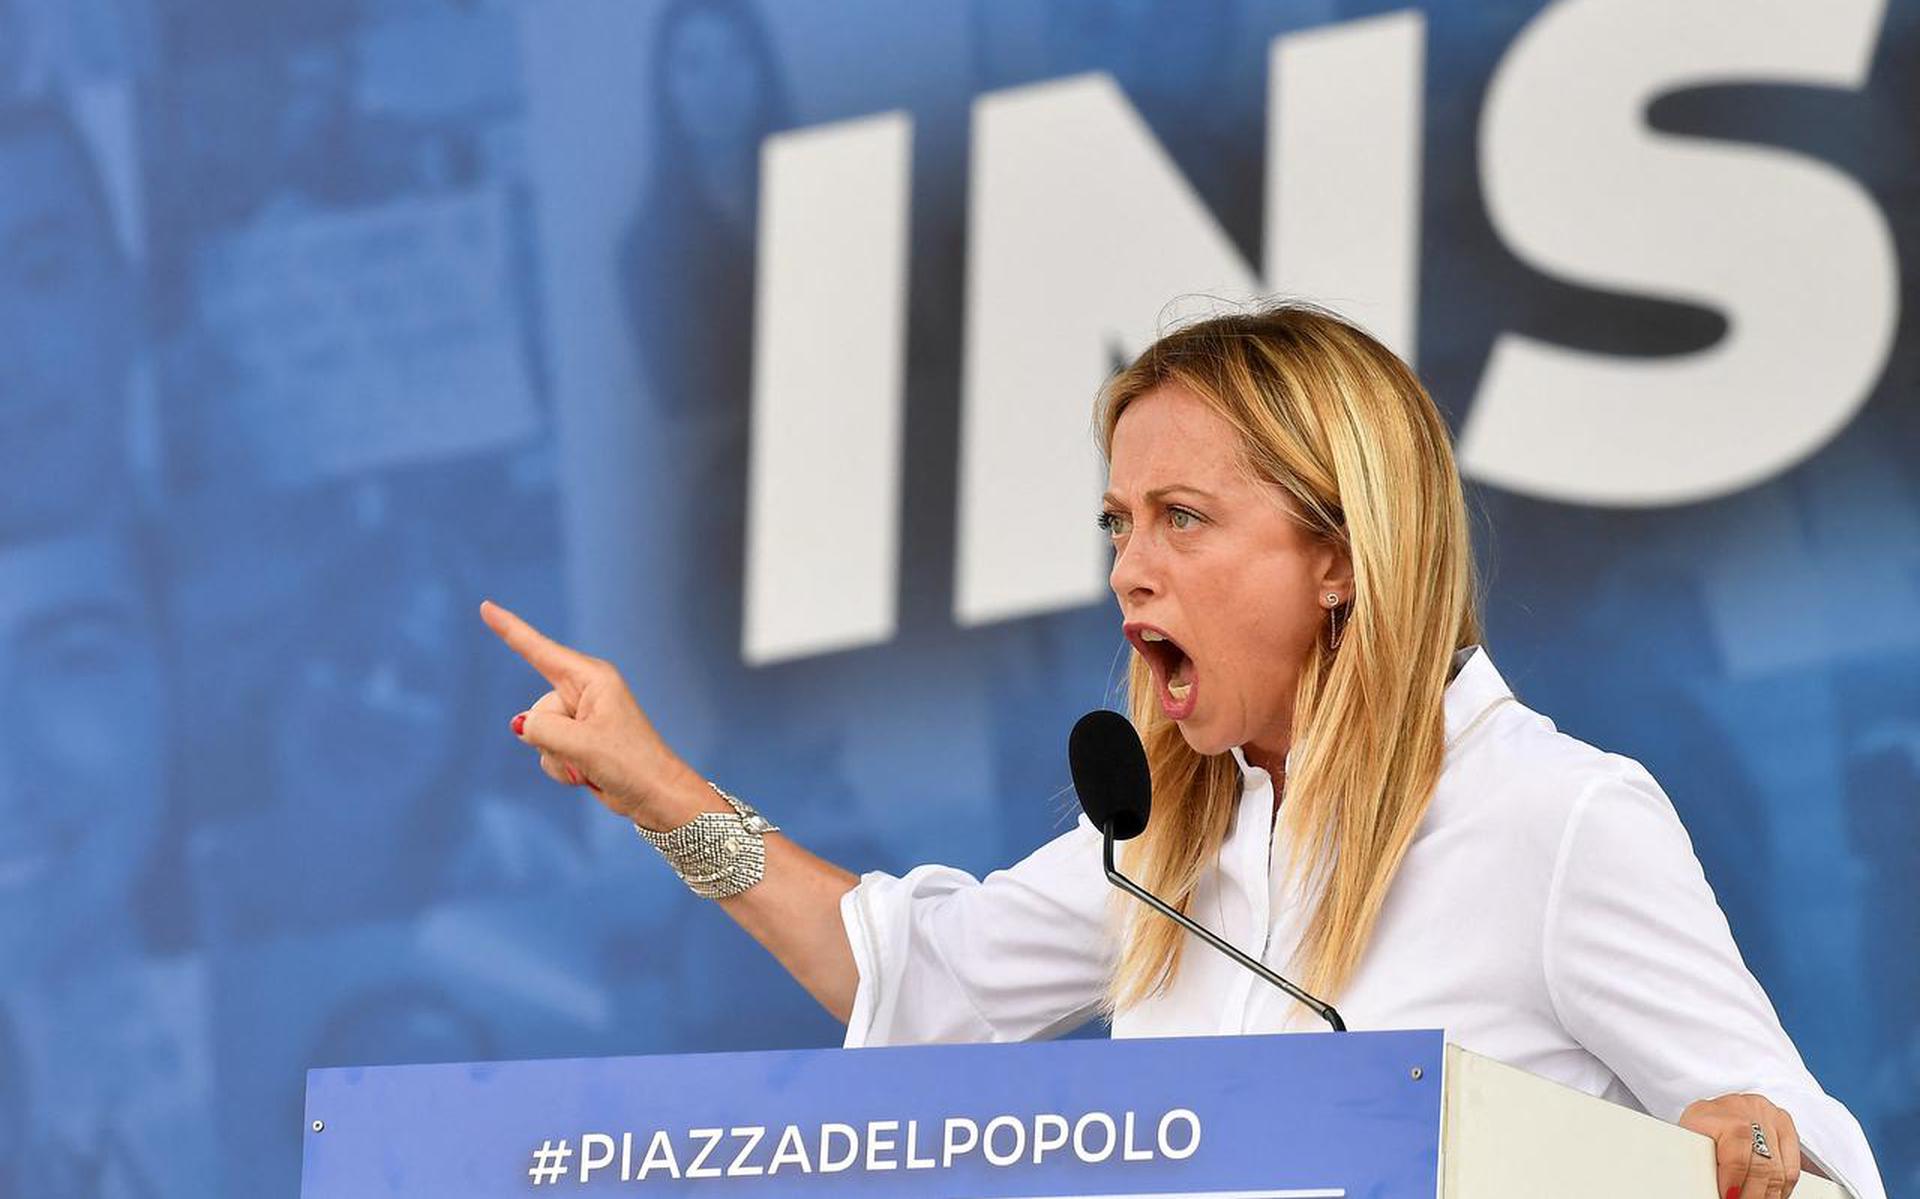 Elezioni in Italia?  Giorgia Melon, l’anima gemella politica di Mussolini, sente il potere